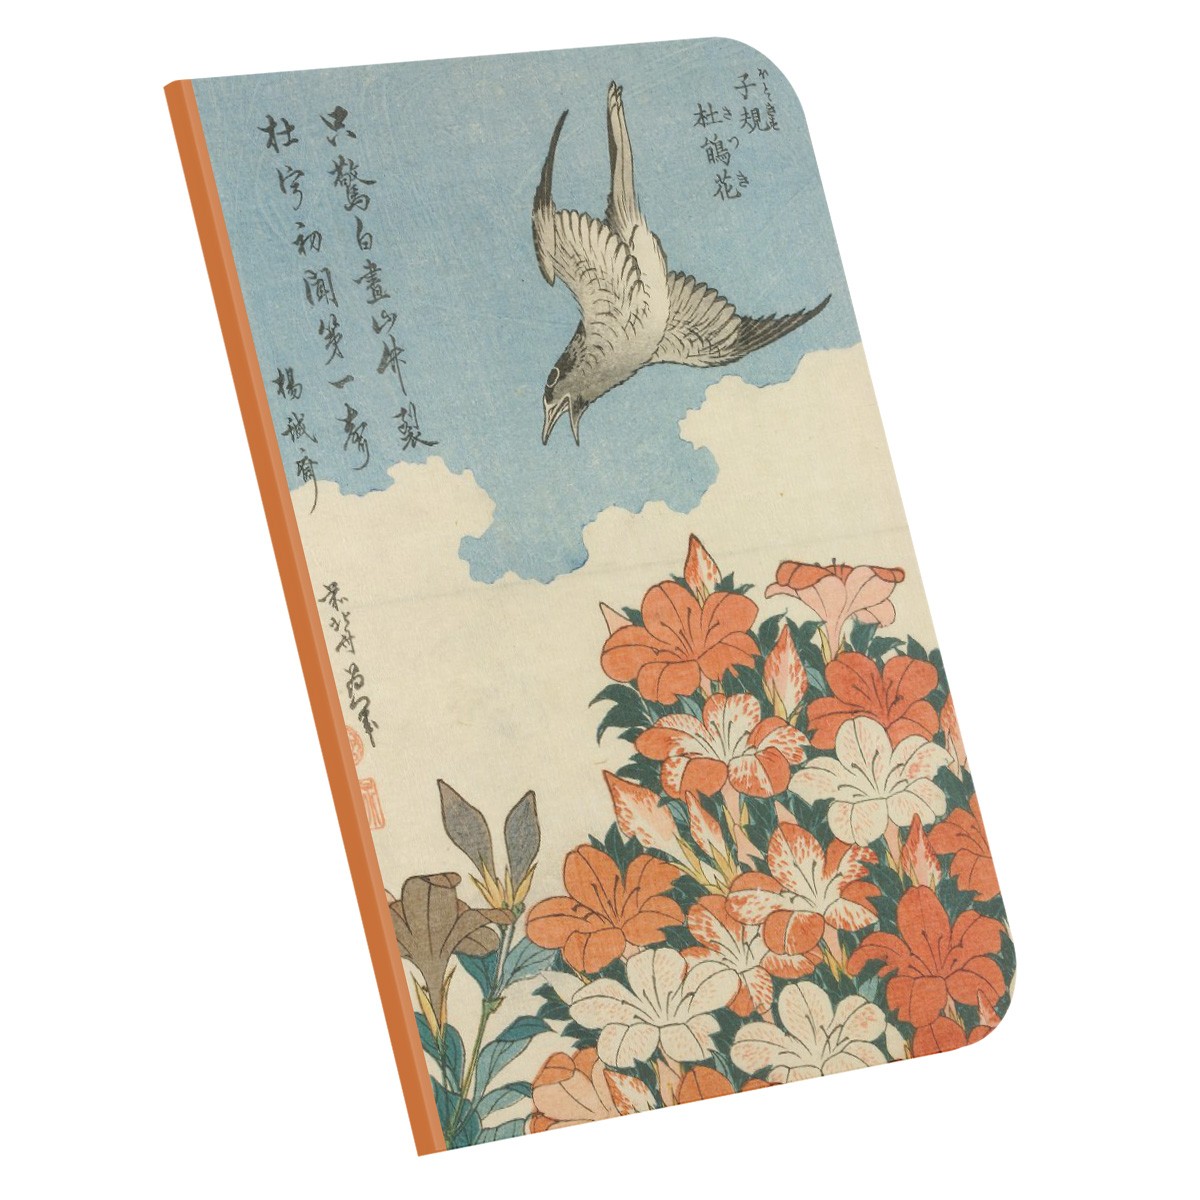 Cuckoo and Azaleas / Hokusai, 1834 / A4 Defter -6